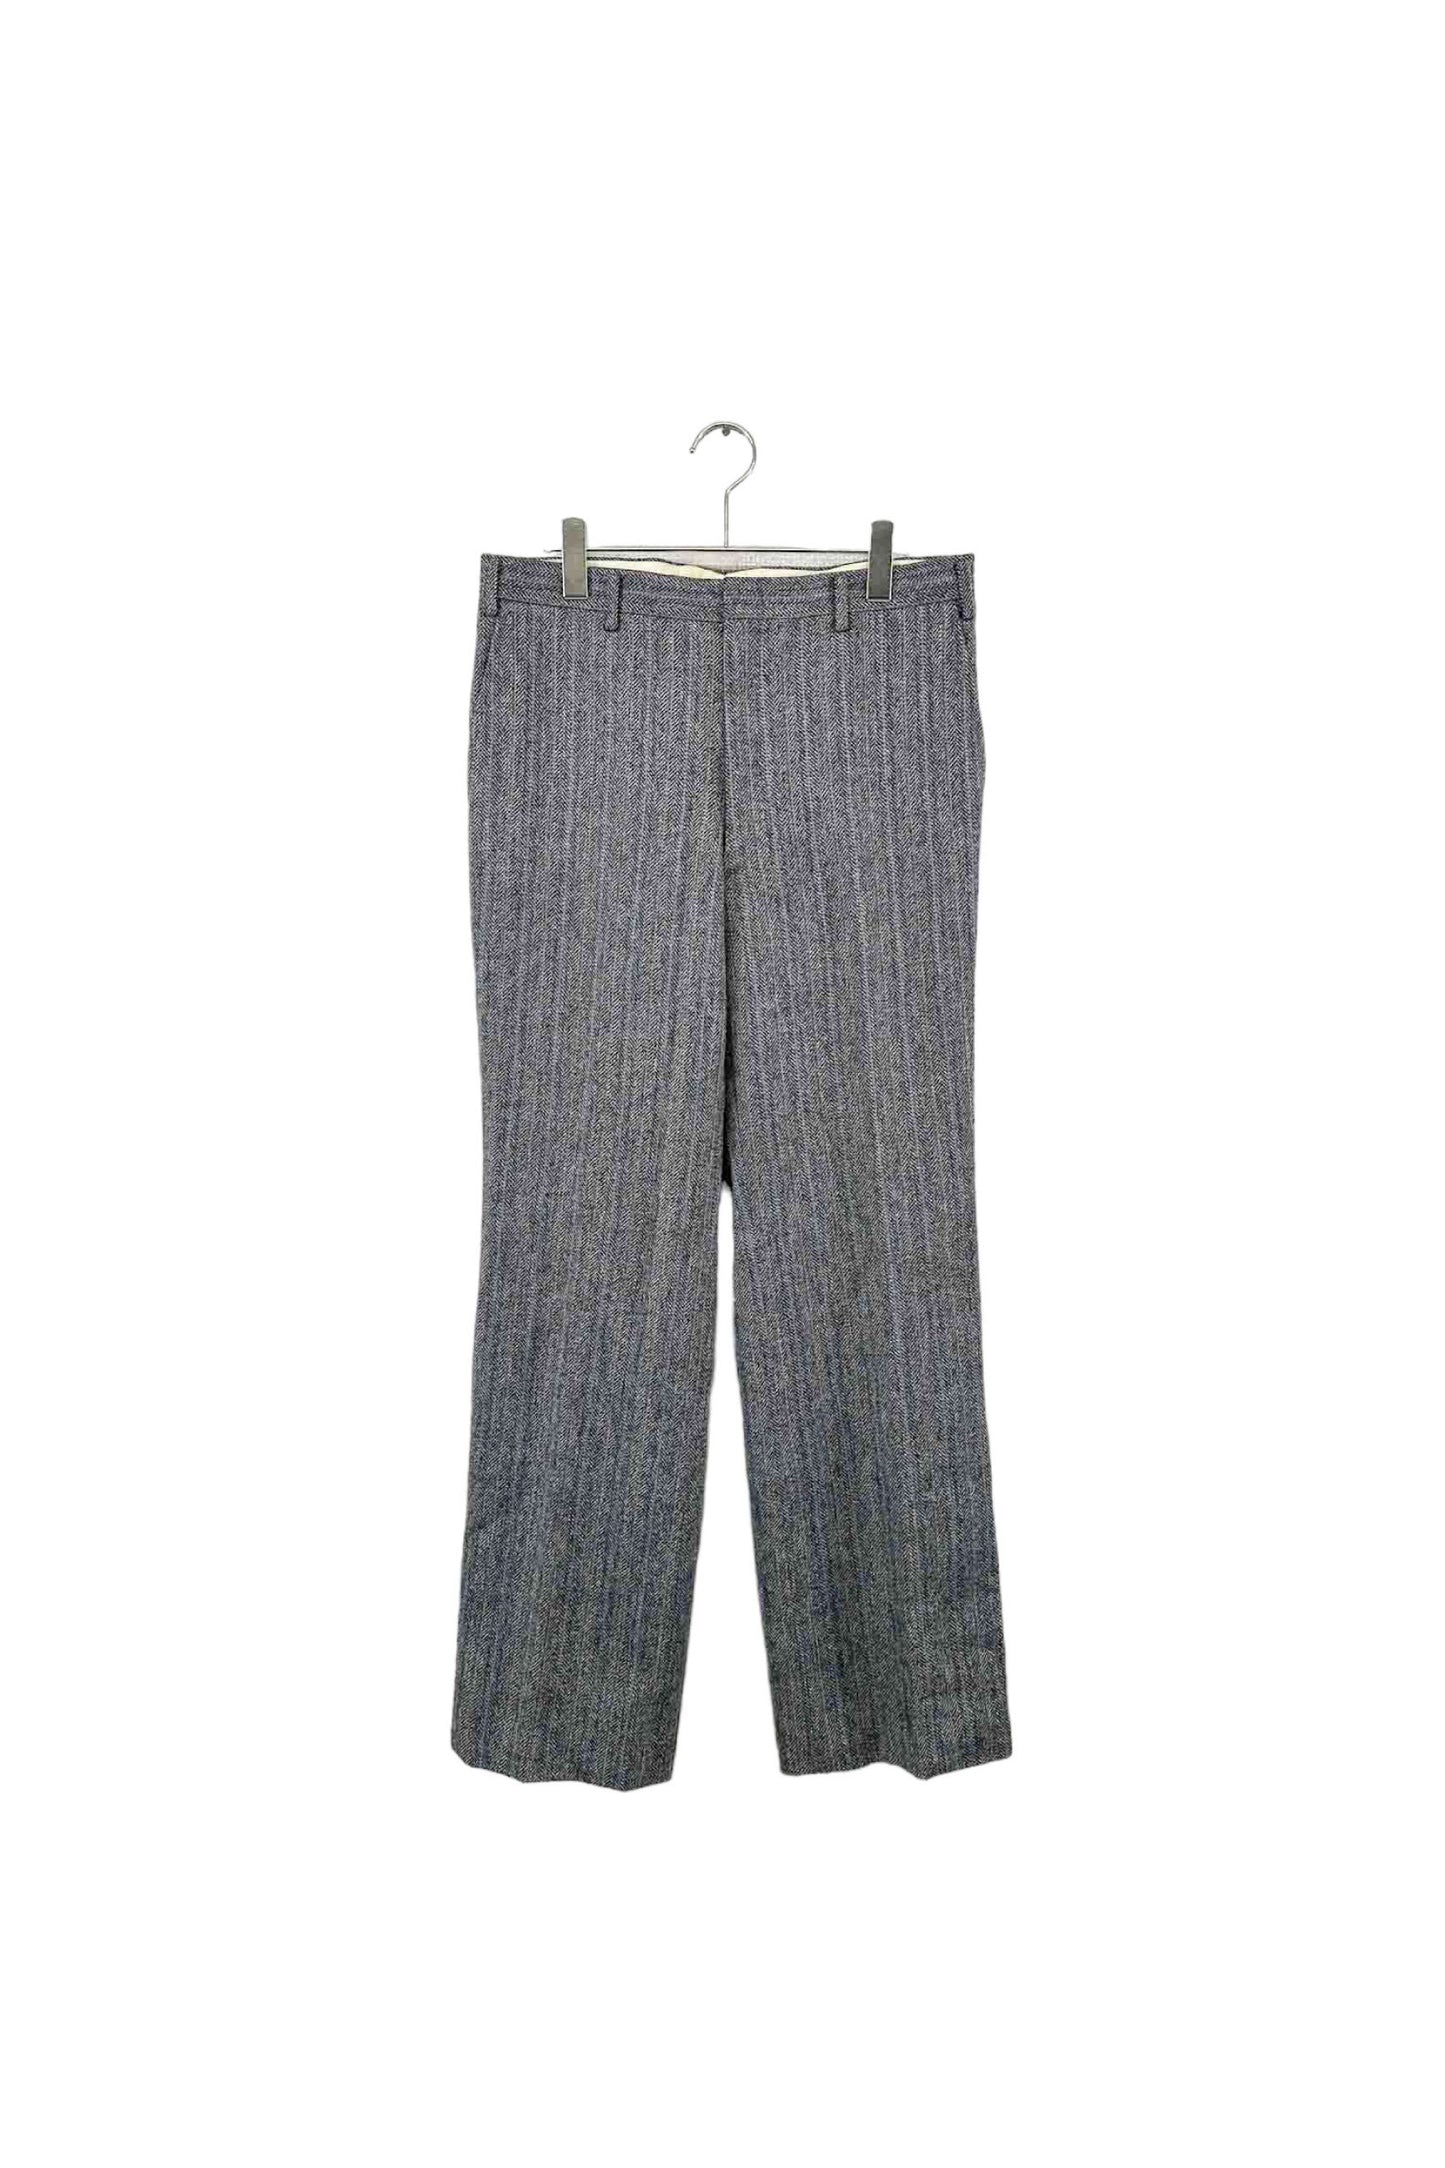 Burberrys wool pants